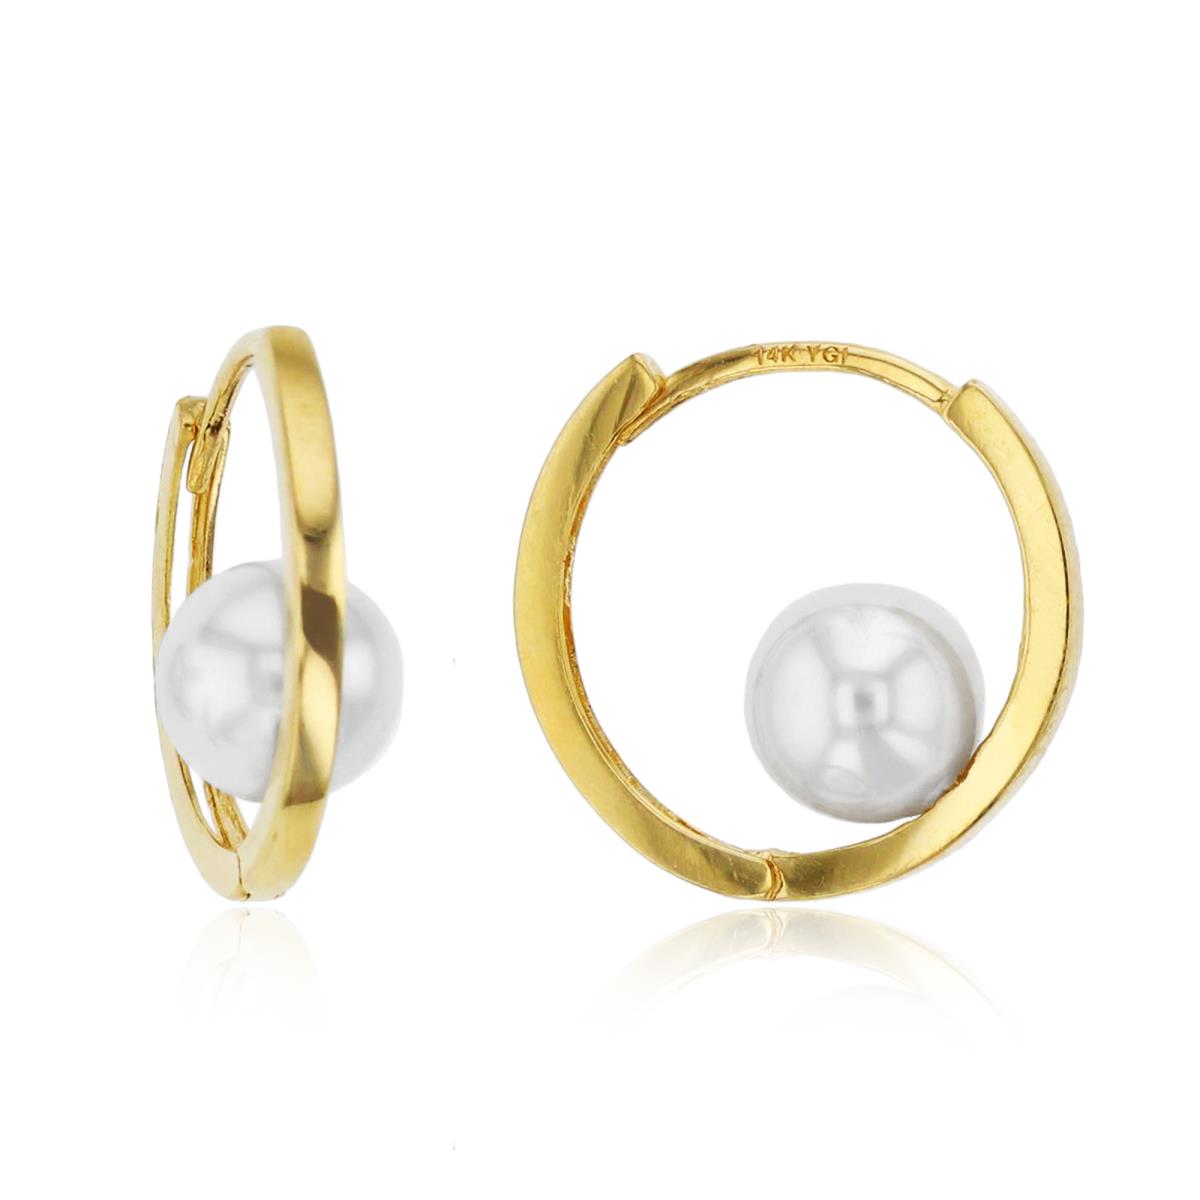 10K Yellow Gold 7mm Synthetic Pearl Inside Huggie Earrings